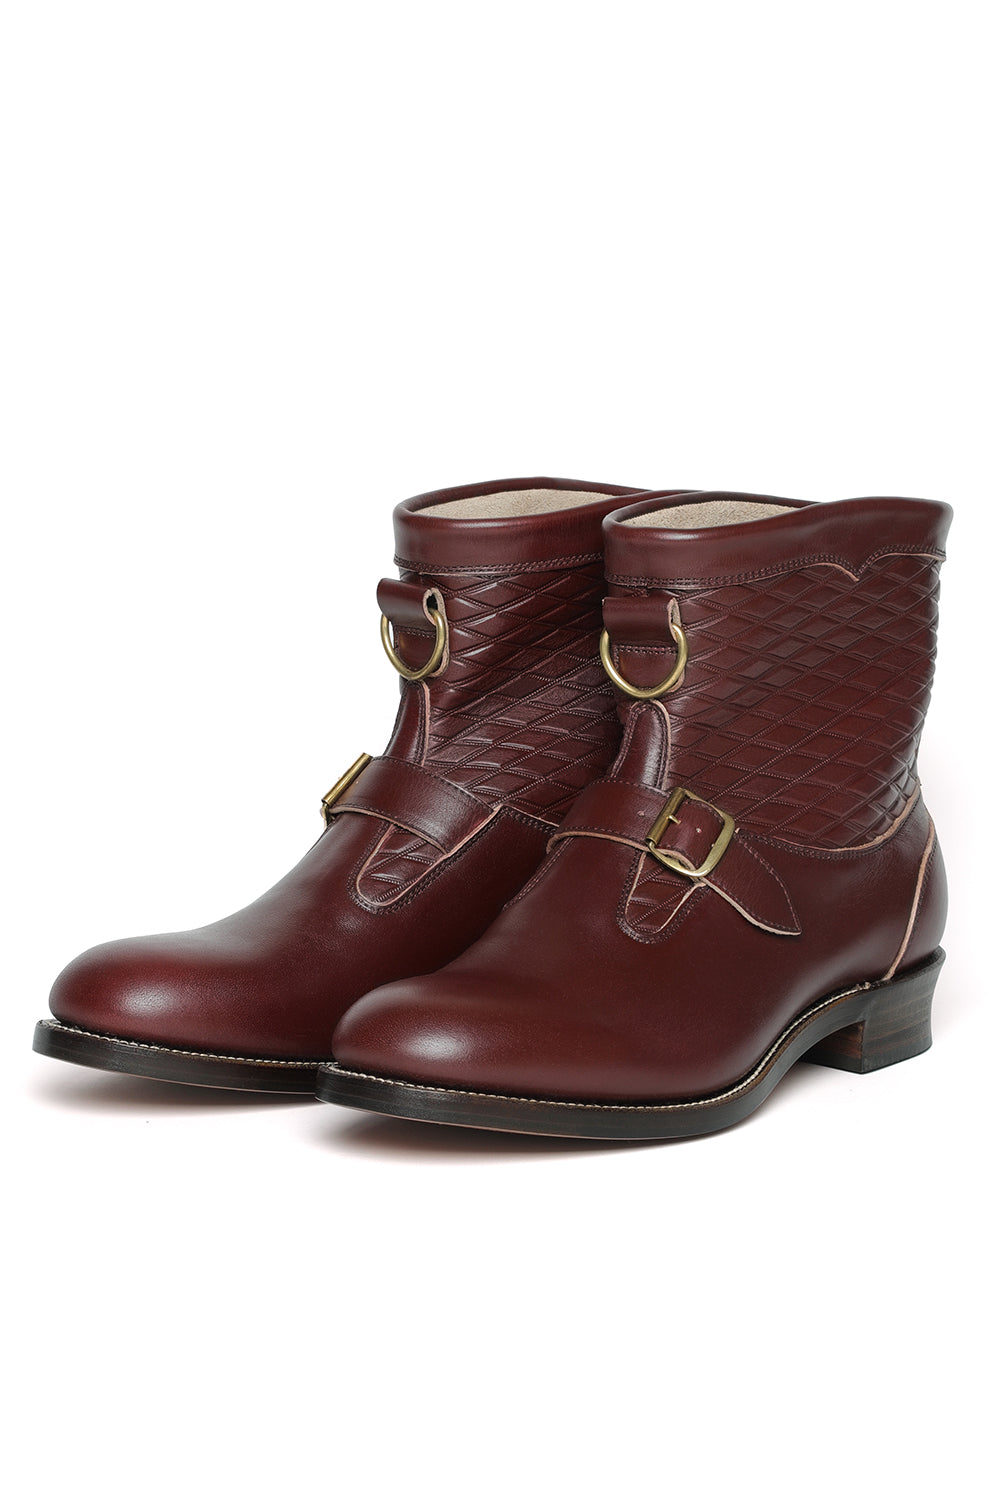 Lot.300 Roper Boots -Burgundy-